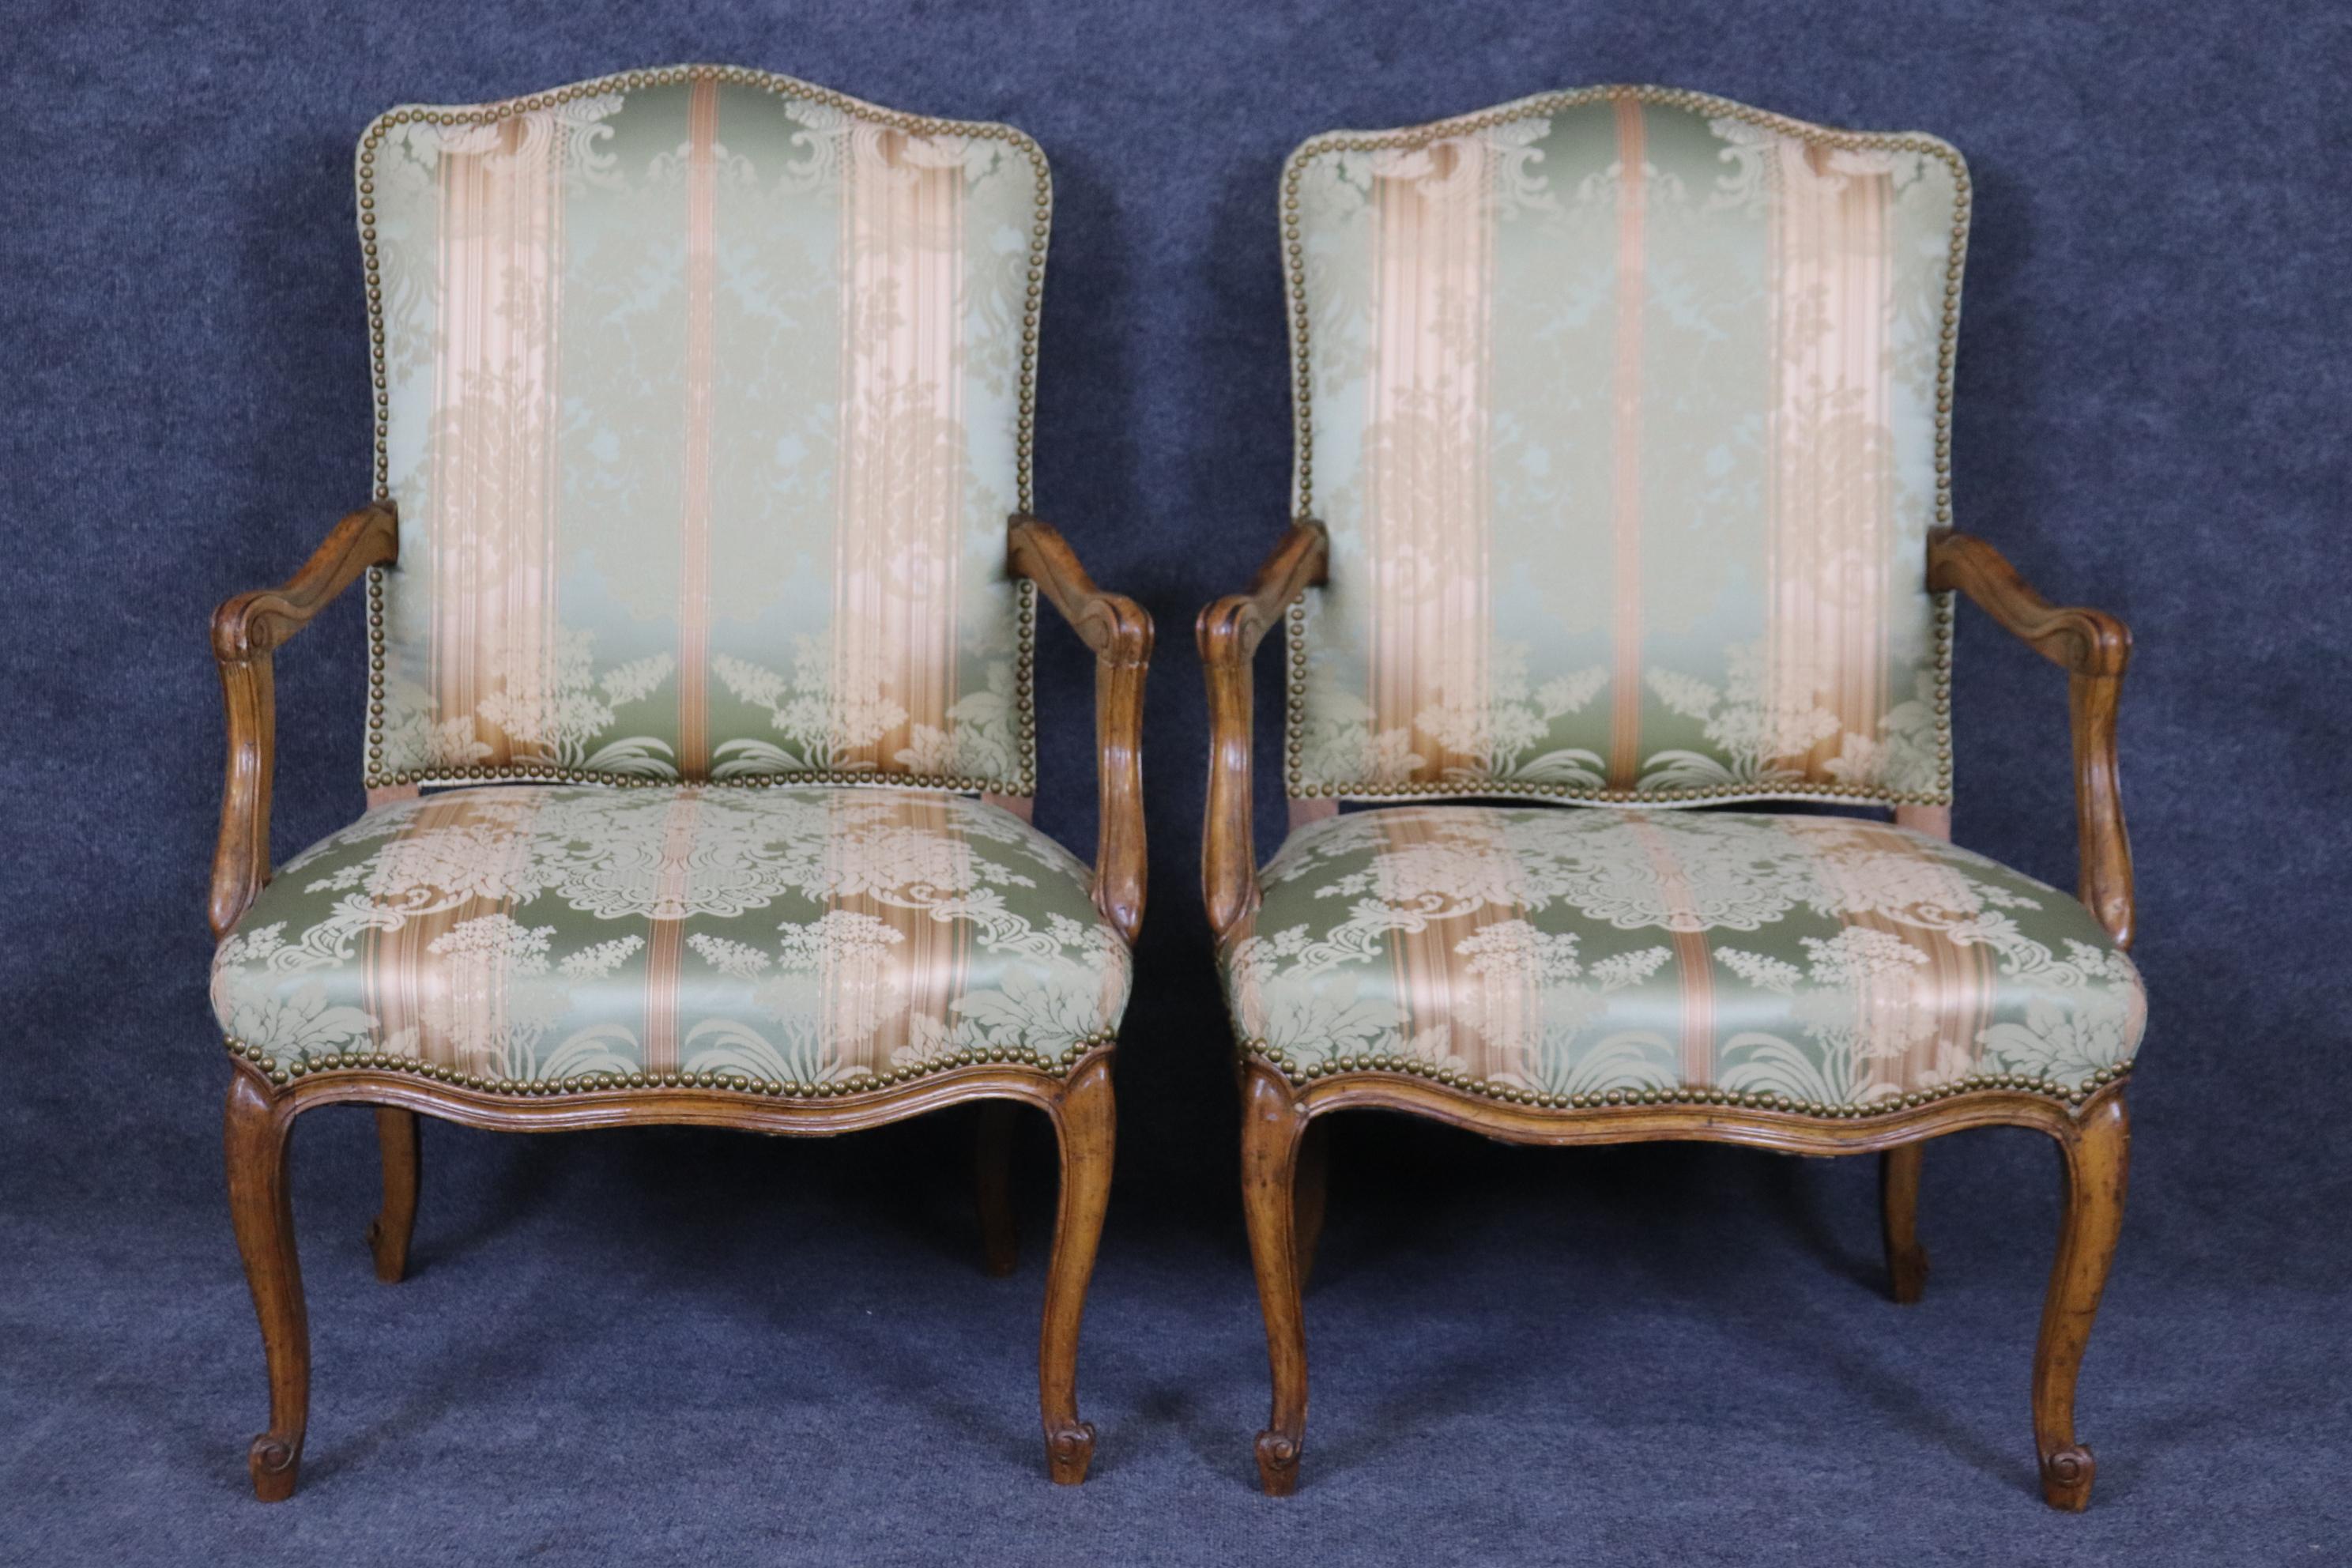 Dies ist ein hervorragendes Paar mit Seidendamast gepolsterter und nagelkopfbesetzter Sessel im Louis XV-Stil. Die Stühle sind in gutem Zustand und sehr frisch und sauber. Sie sind gebraucht und können daher Flecken oder Unvollkommenheiten